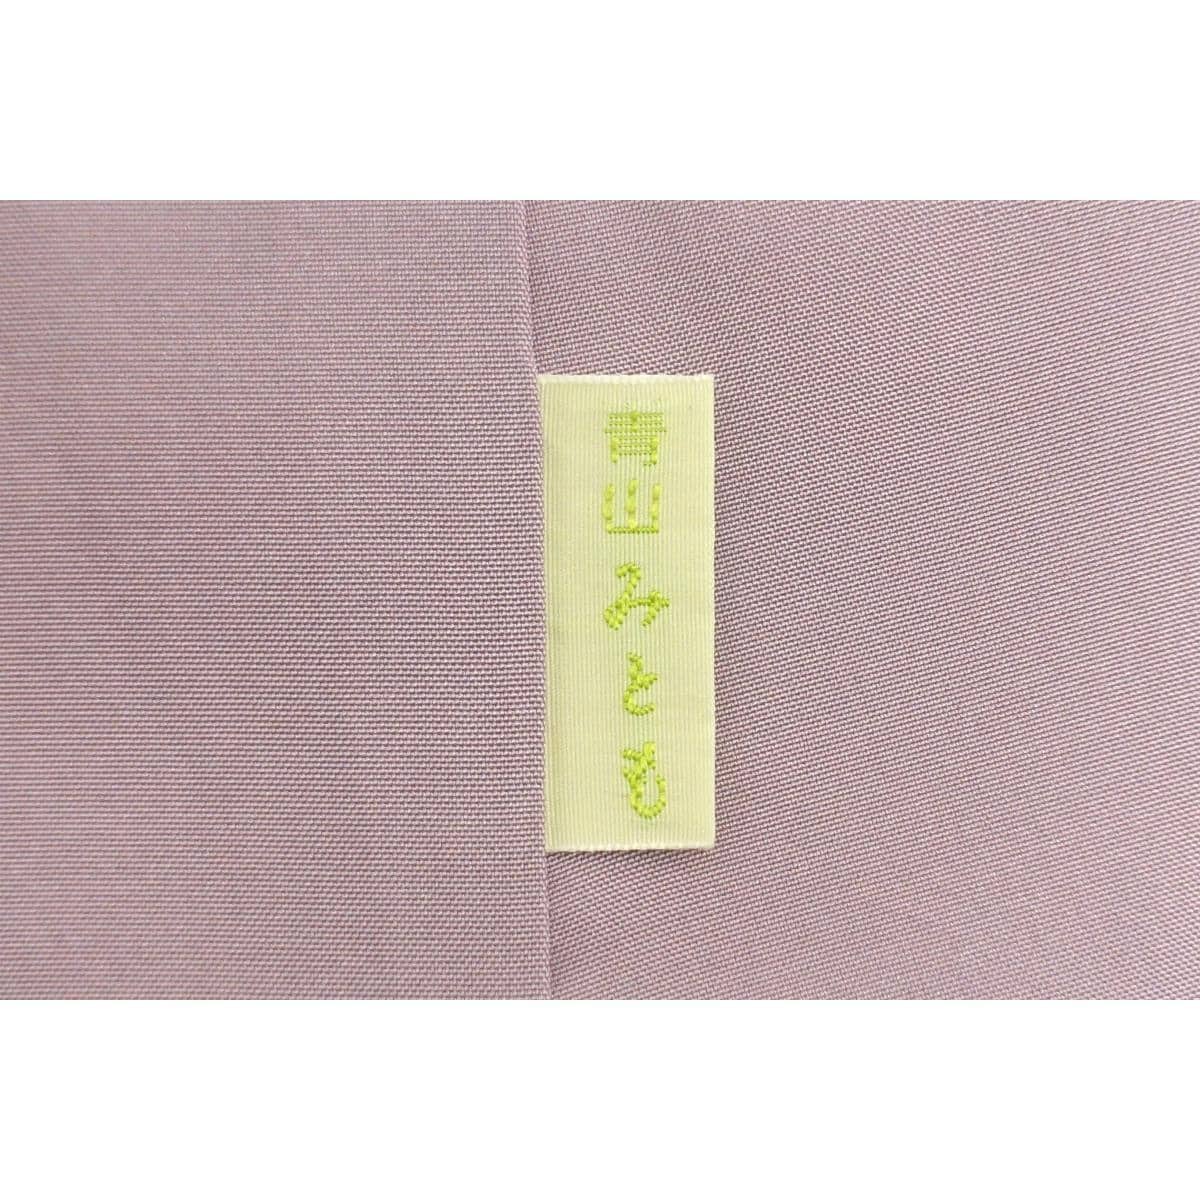 Homongi Authentic Yuki Yuki Tsumugi with certificate stamp